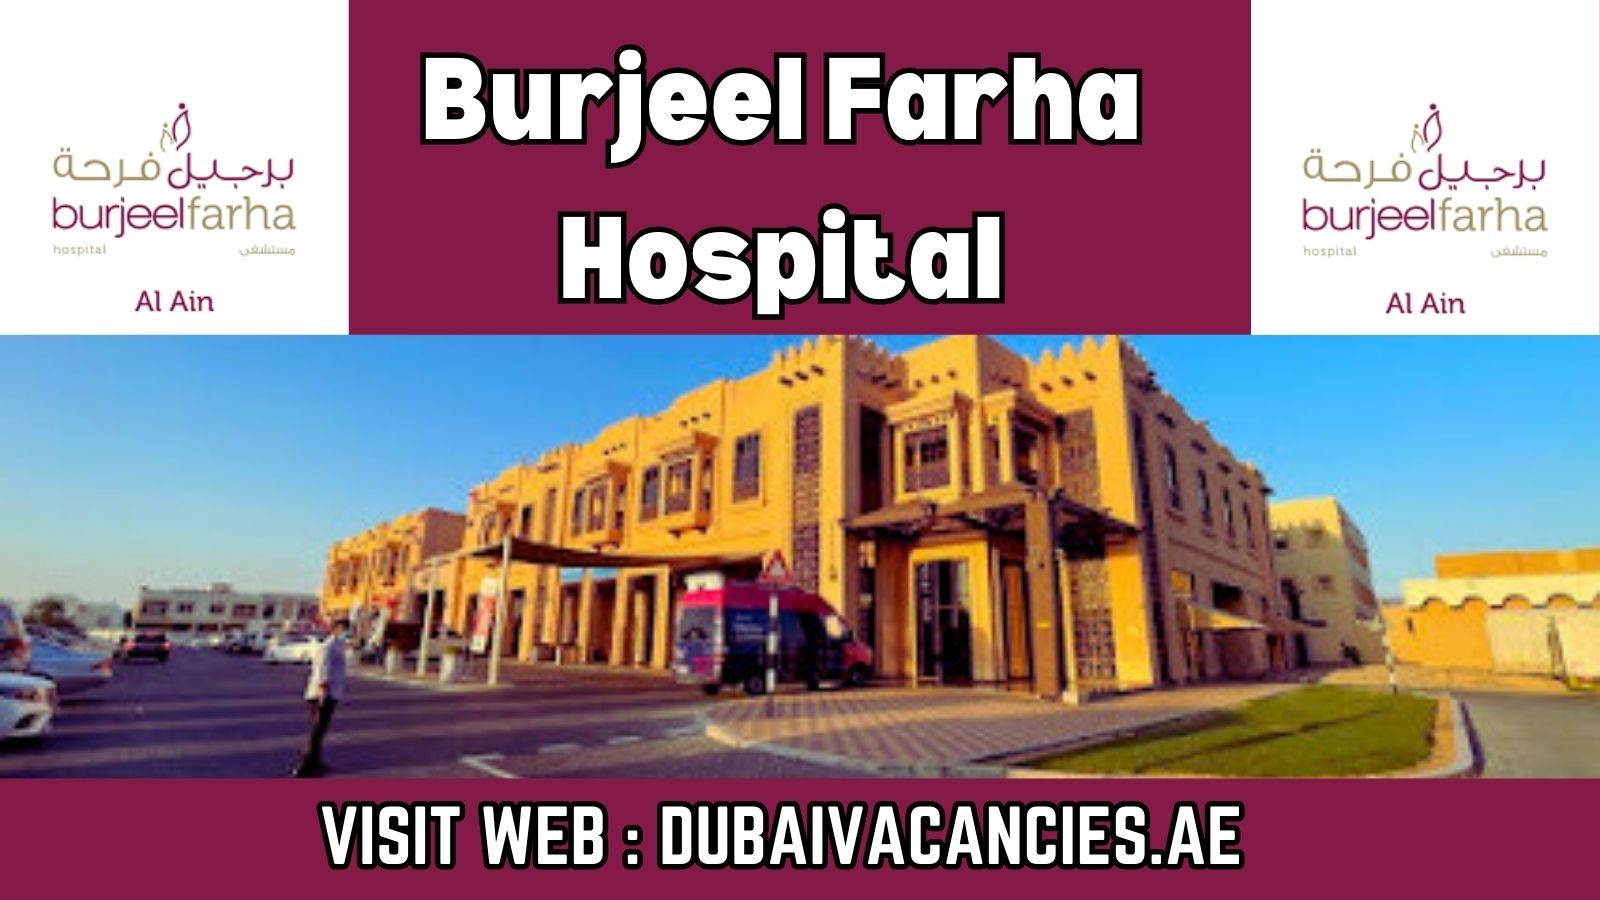 Burjeel Farha Hospital Careers -Burjeel Farha Hospital Jobs - Burjeel Hospital Careers 